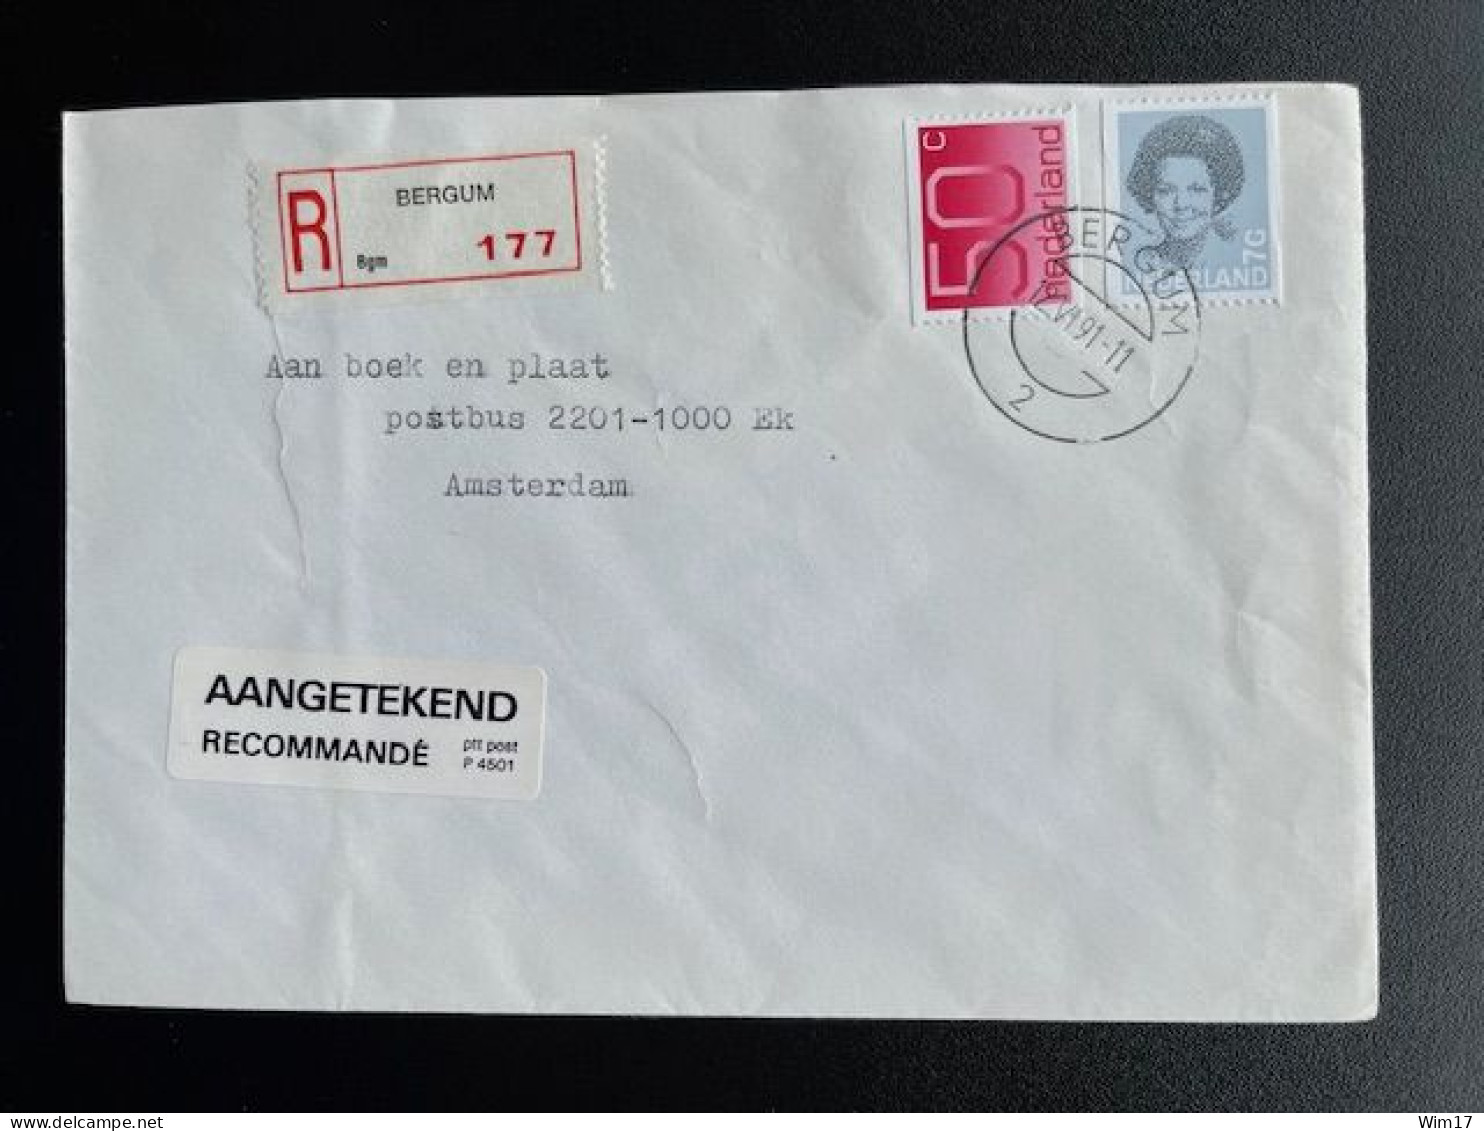 NETHERLANDS 1991 REGISTERED LETTER BERGUM TO AMSTERDAM 12-06-1991 NEDERLAND AANGETEKEND - Covers & Documents